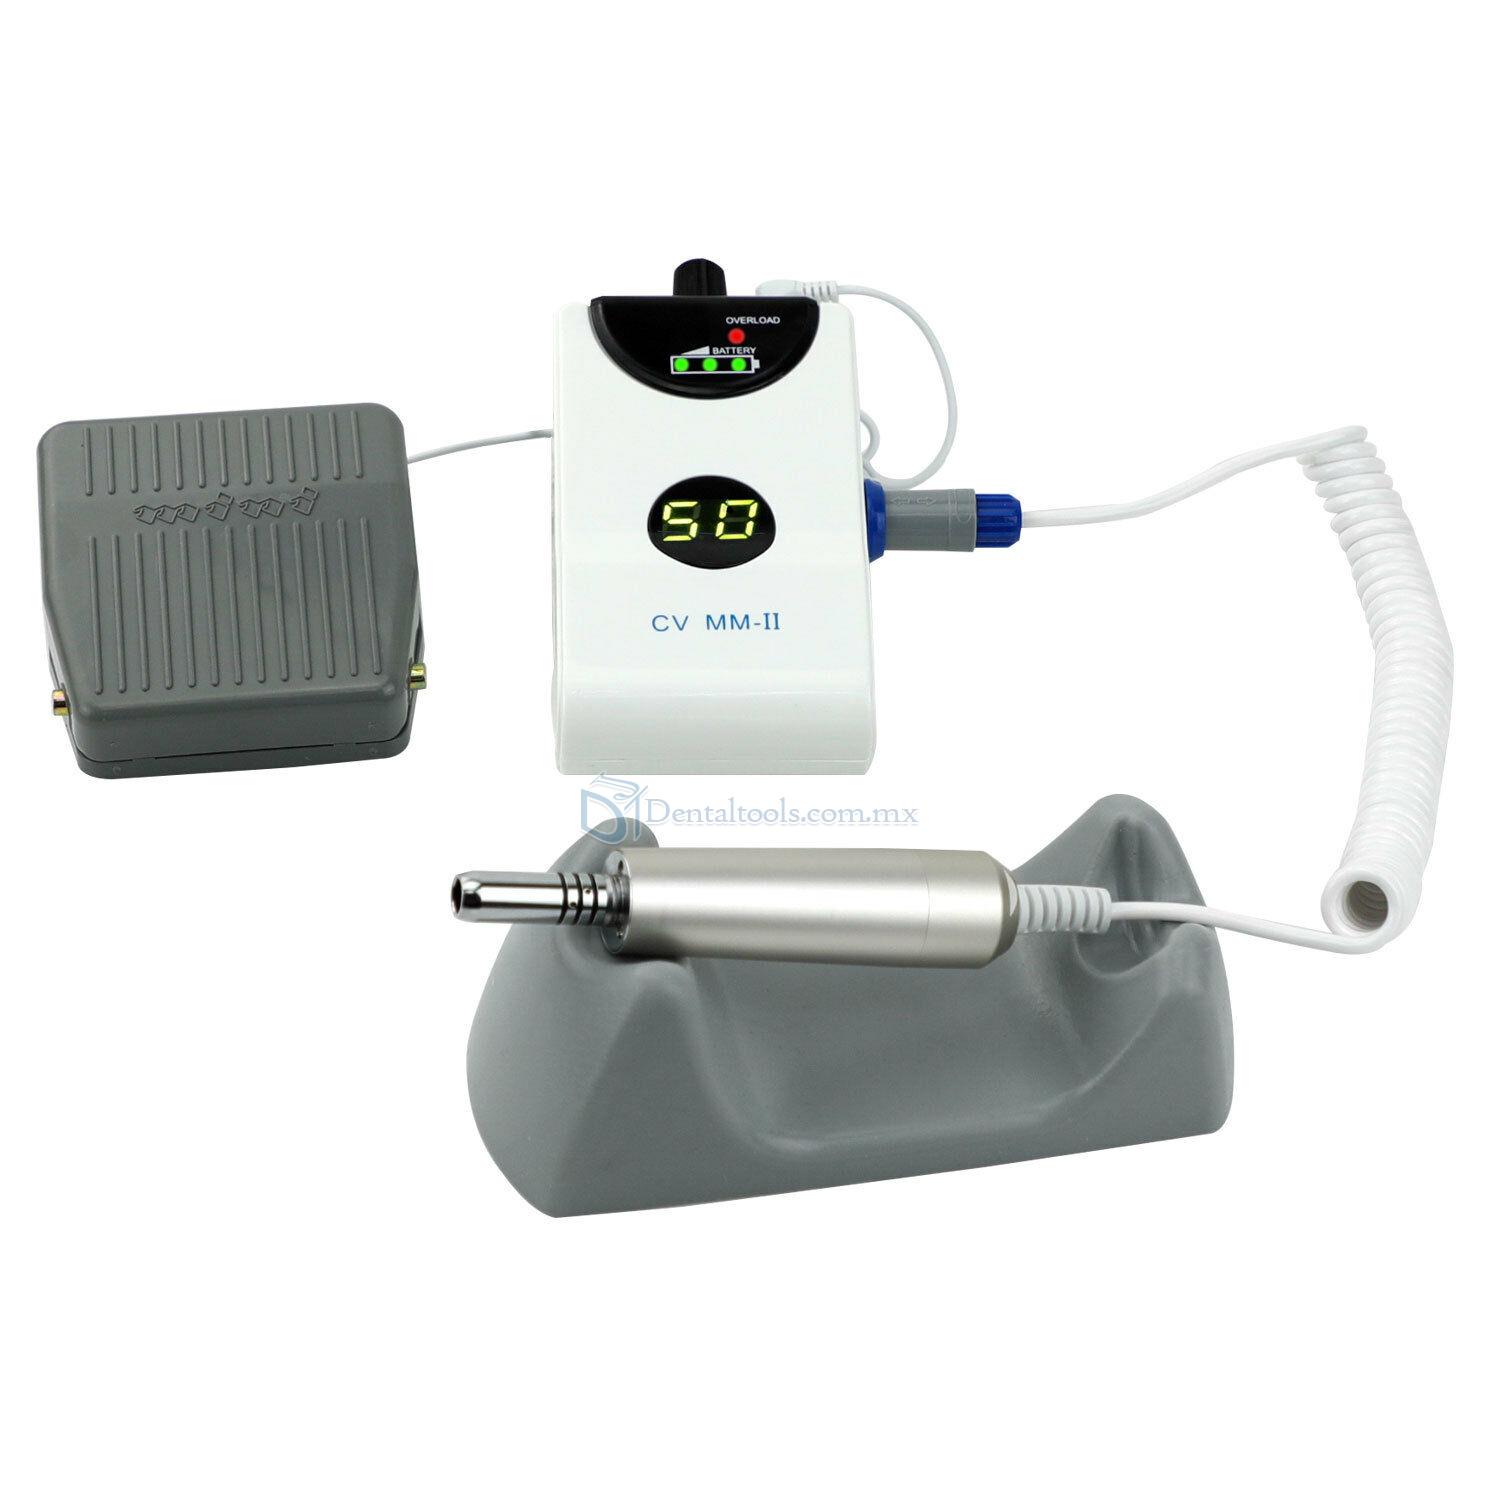 Micromotor eléctrico portátil sin escobillas para laboratorio dental joyas y uñas